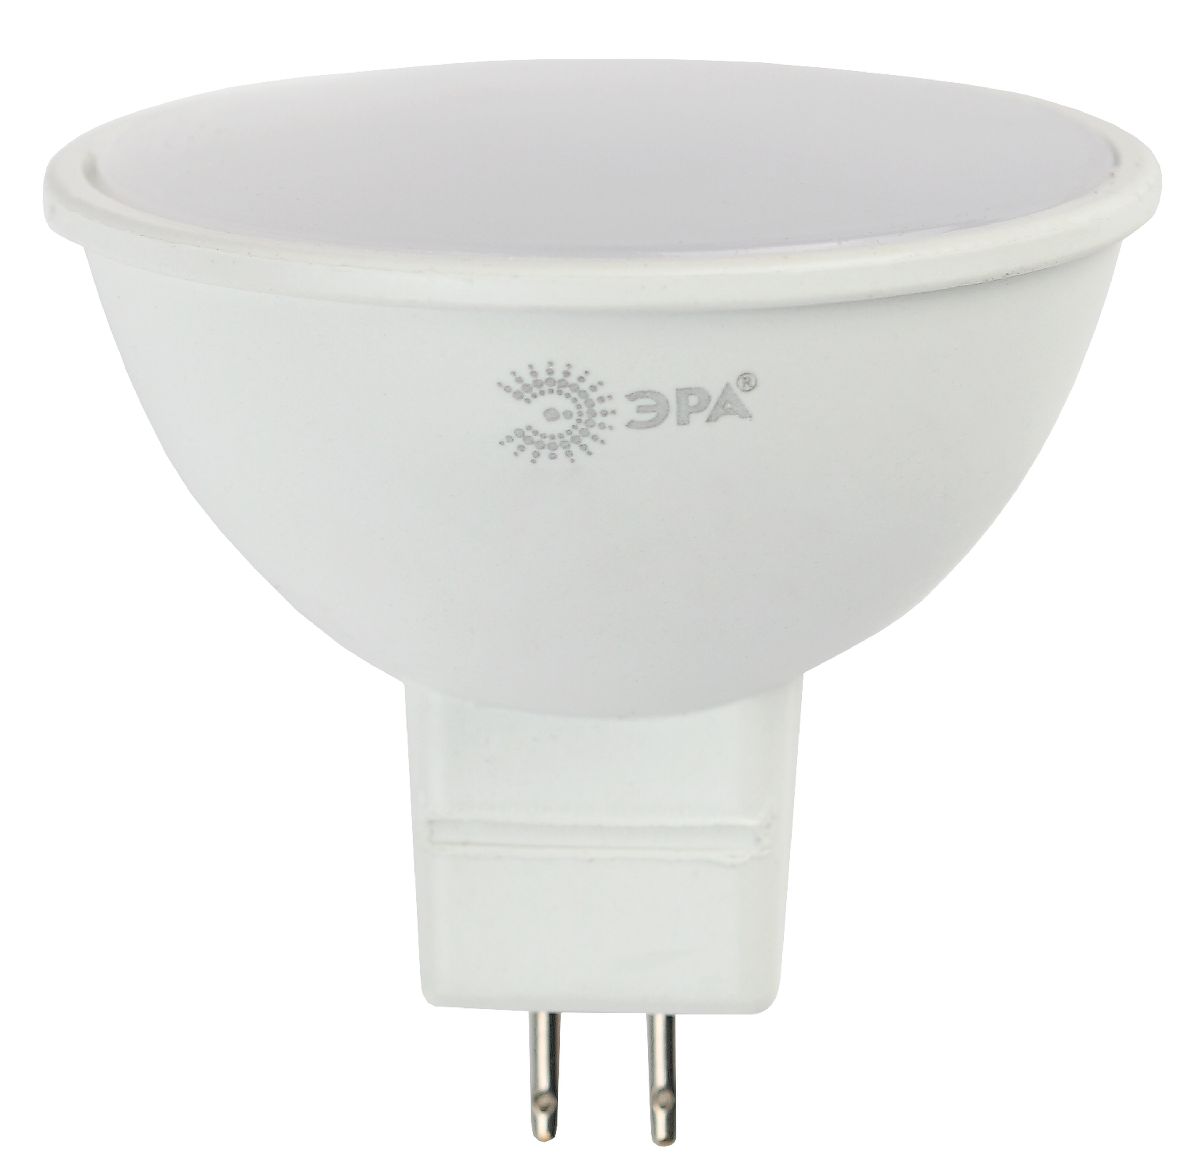 Лампа светодиодная Эра GU5.3 12W 6000K LED MR16-12W-860-GU5.3 Б0049075